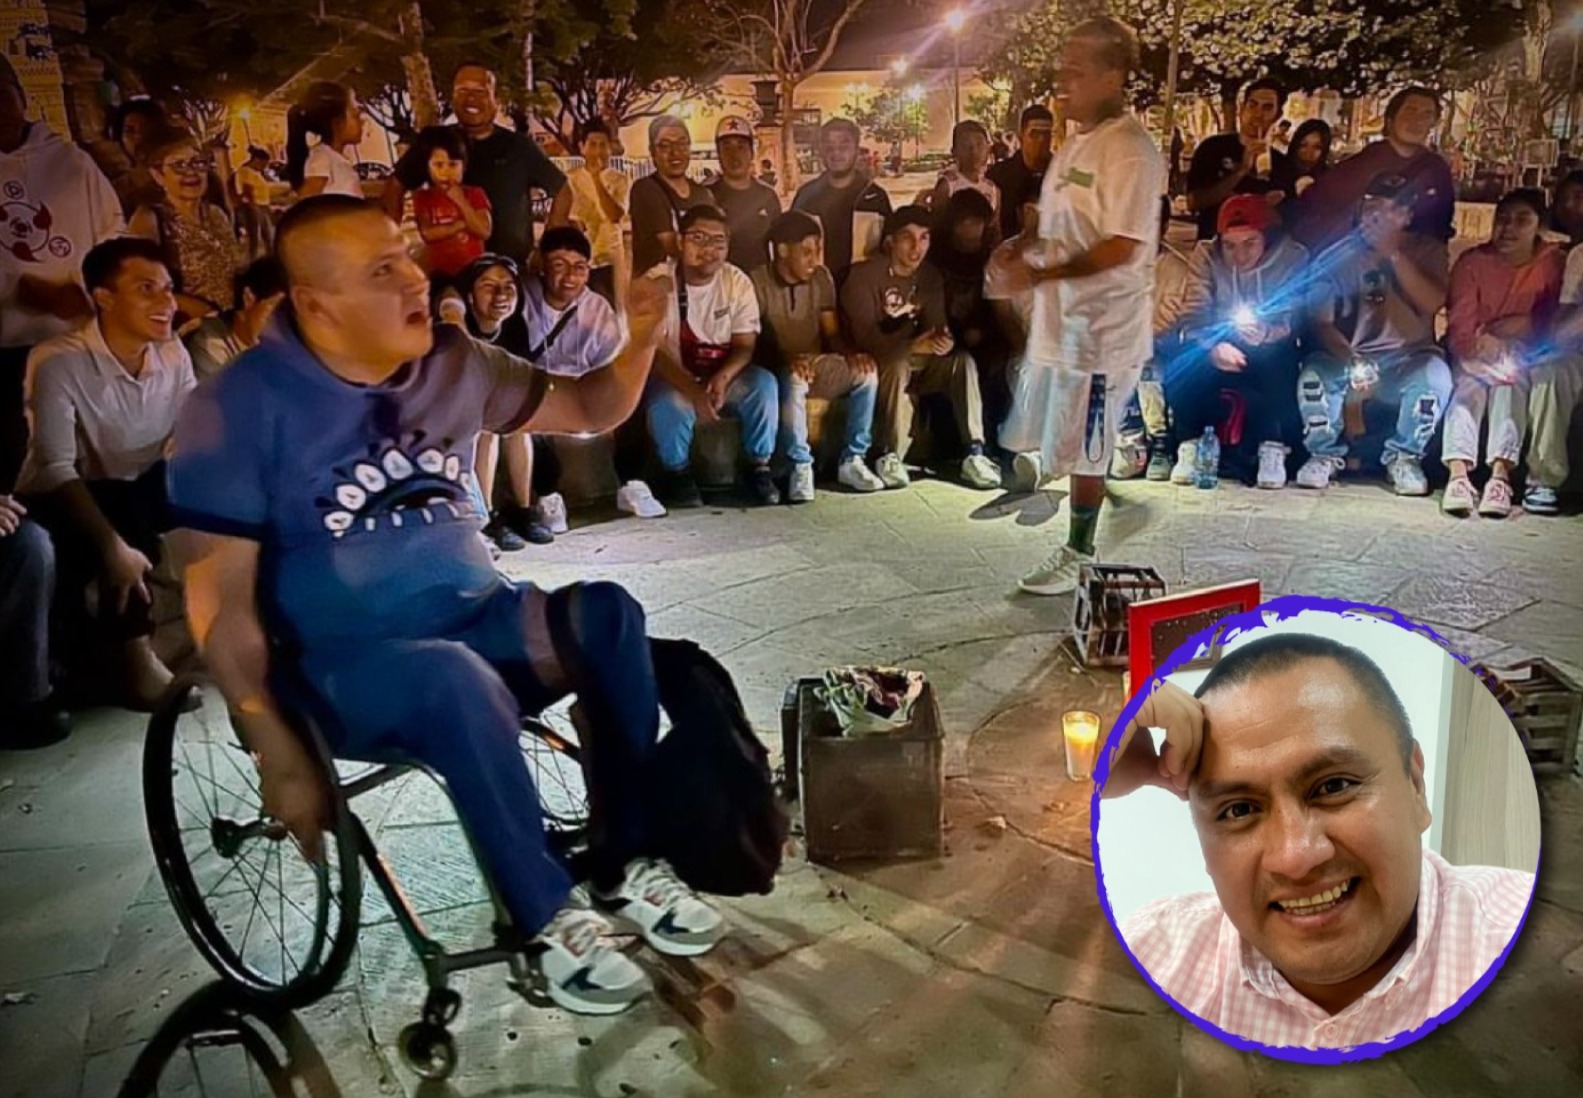 Juan Carlos Salamanca en silla de ruedas, a sus espaldas un grupo de hombres. Abajo a la derecha un círculo con una fotografía de Juan Carlos sonriendo.